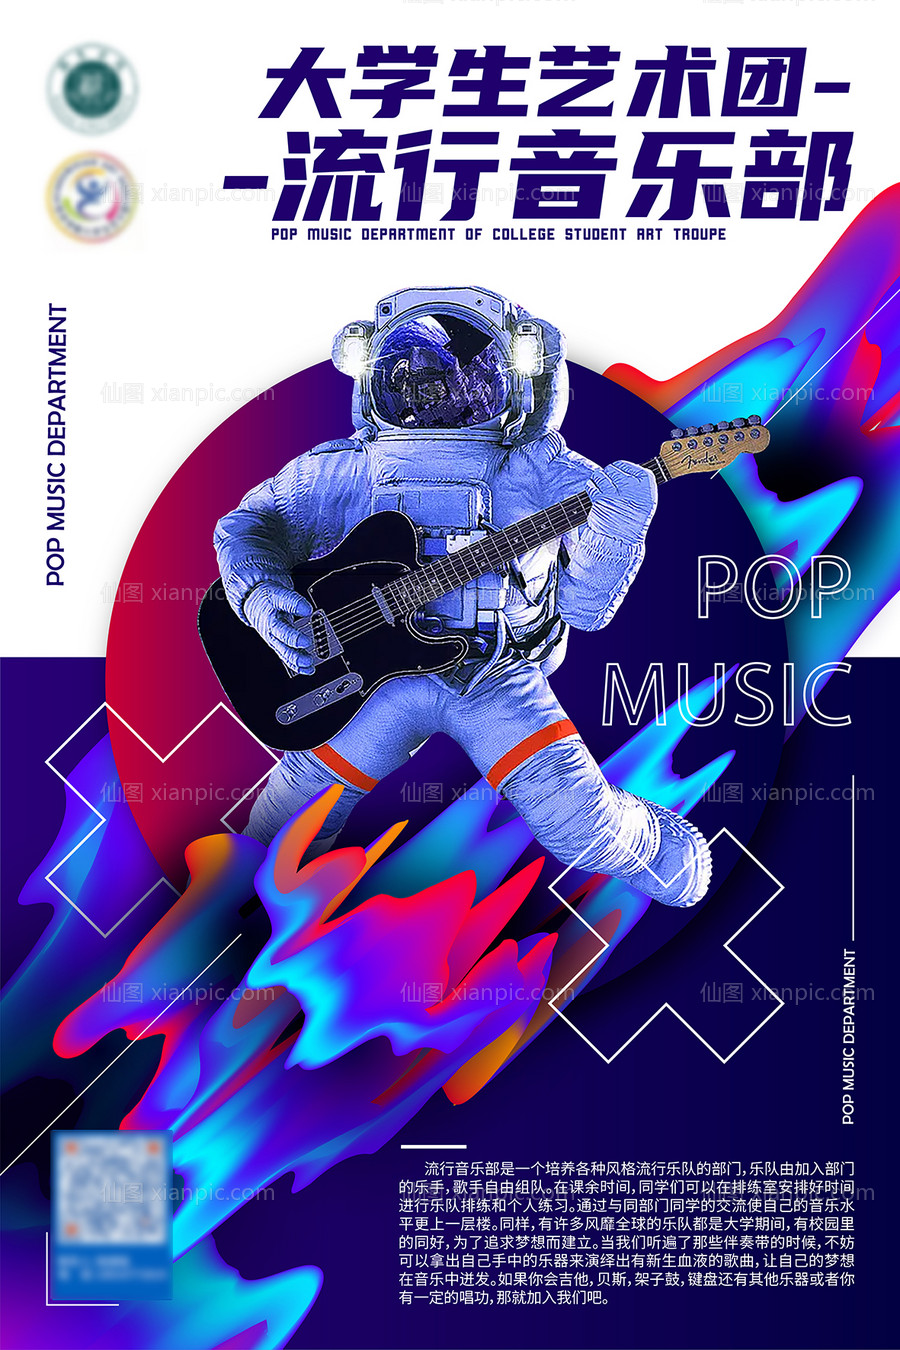 素材乐-大学生音乐团乐器音乐节艺术节流行海报